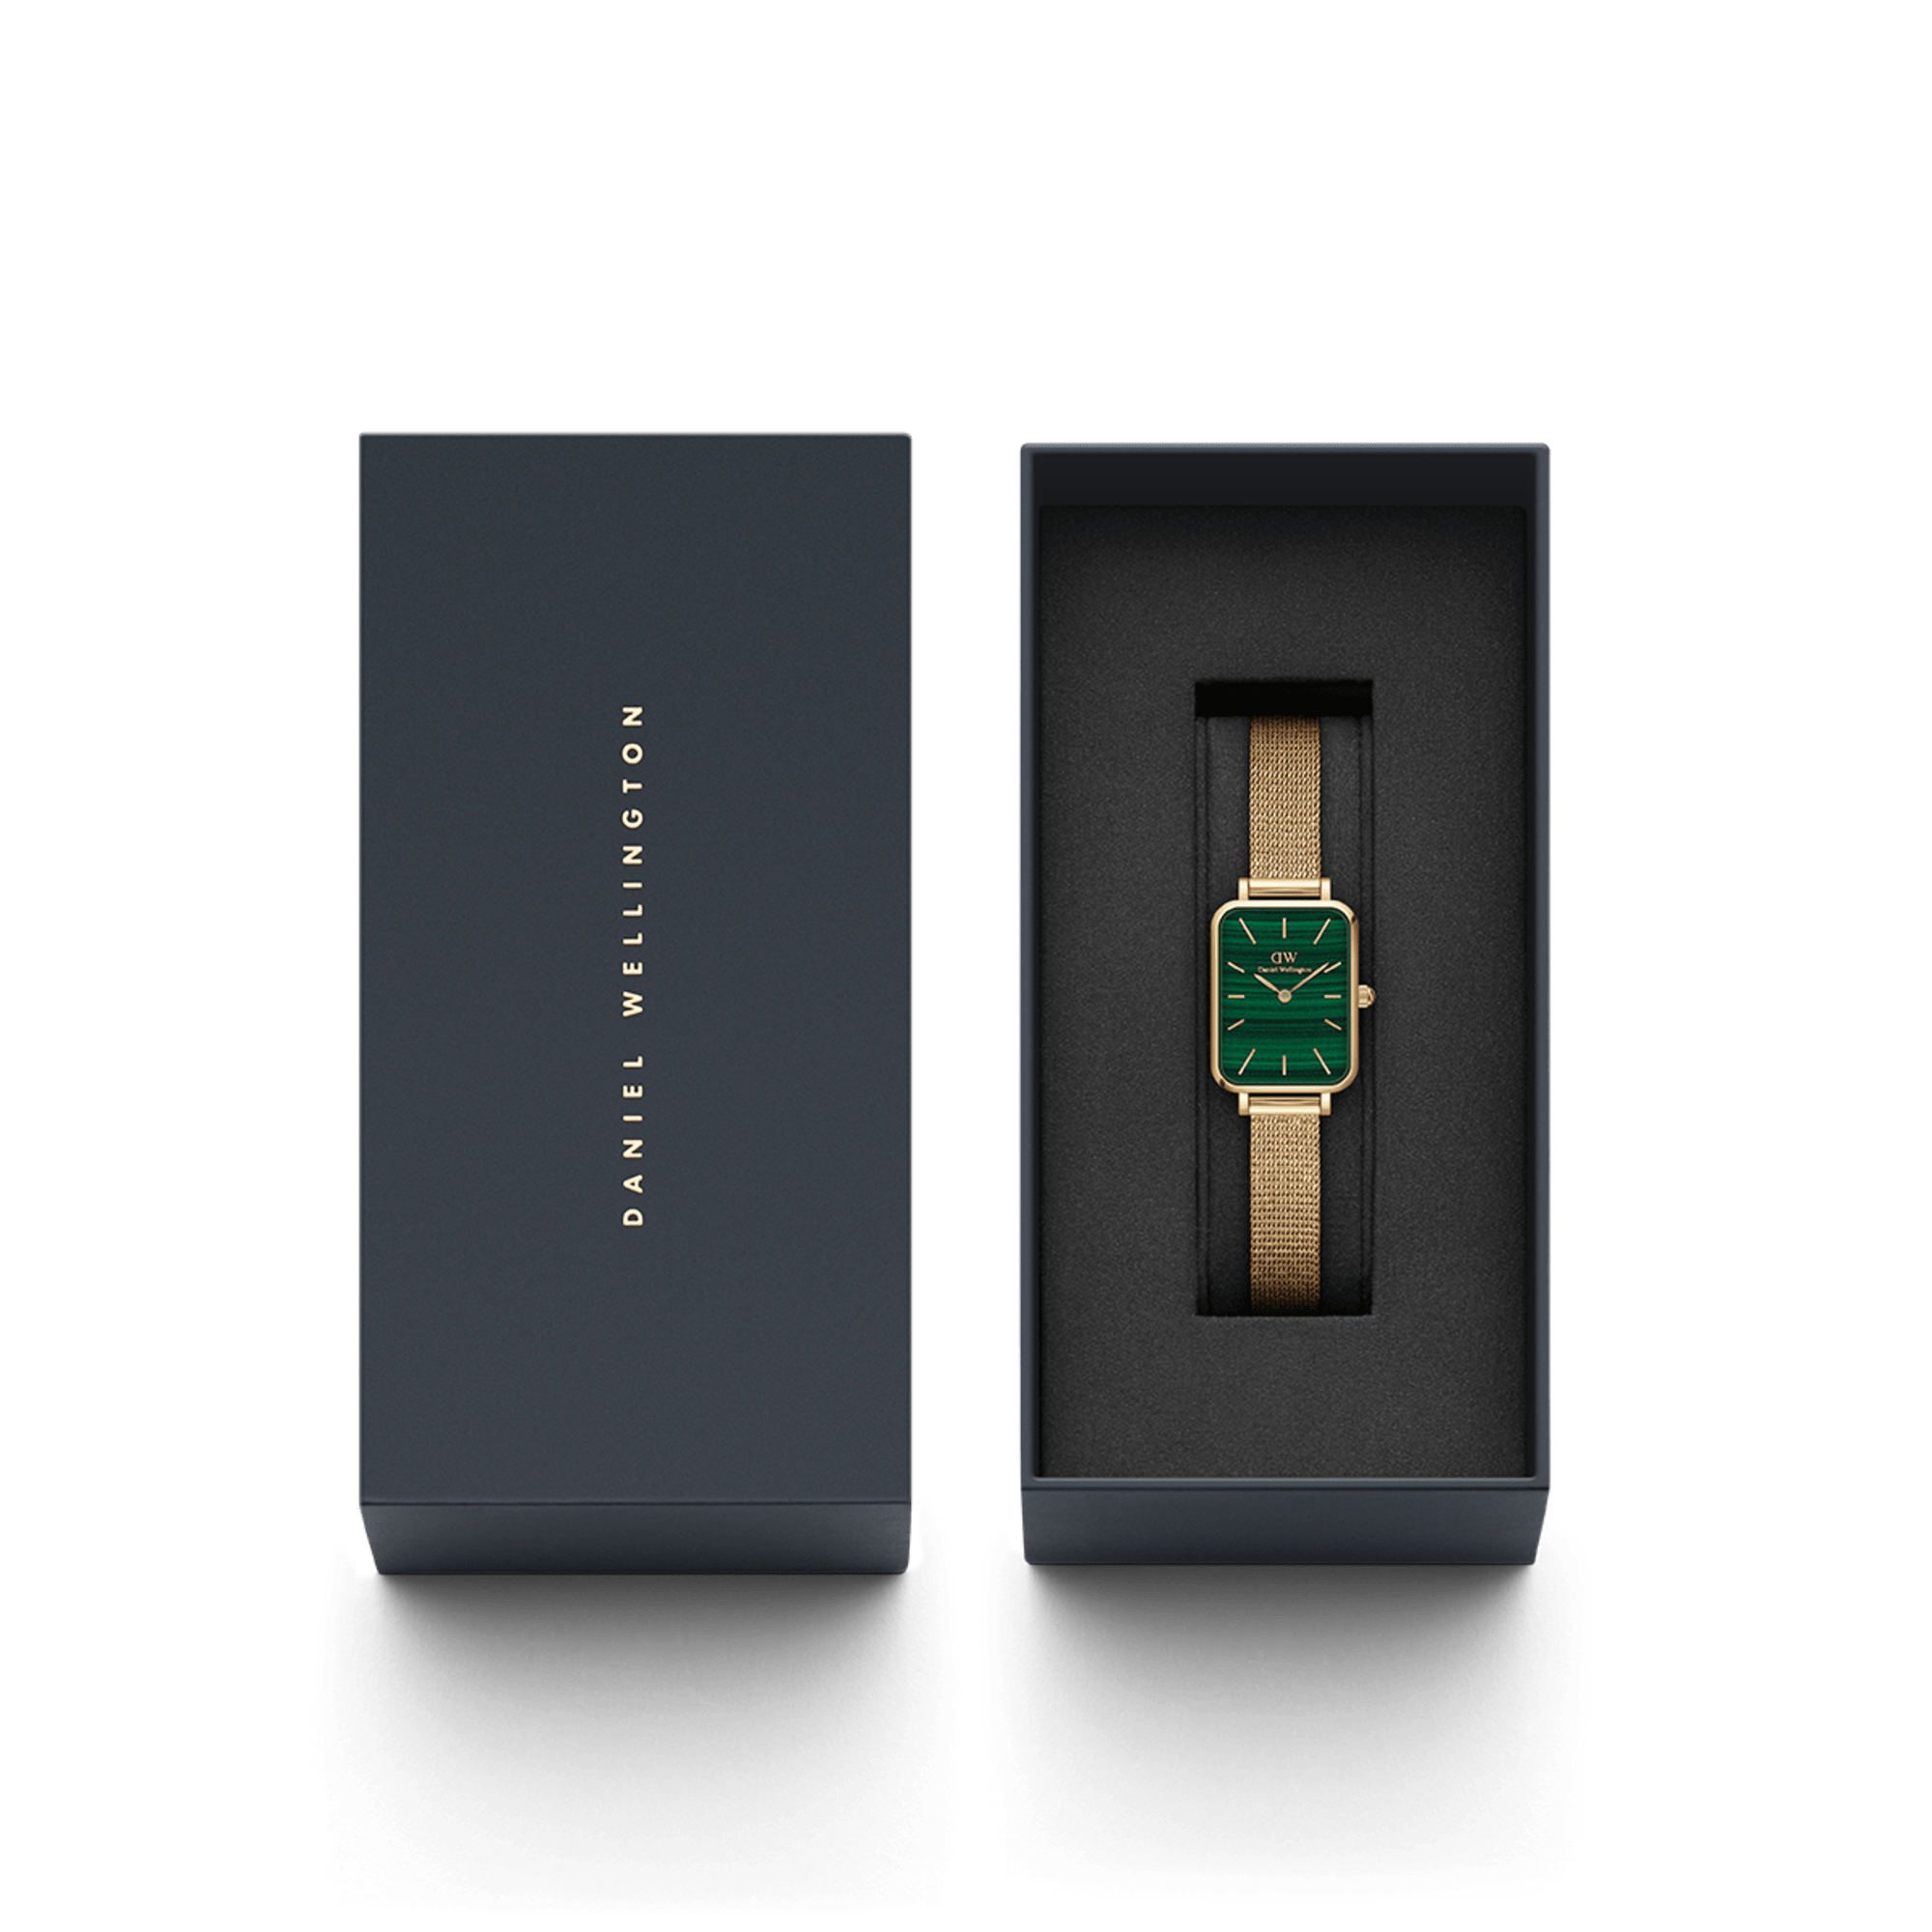 Relógio Daniel Wellington Quadro Pressed Evergold G Green - Ana Joalheiros